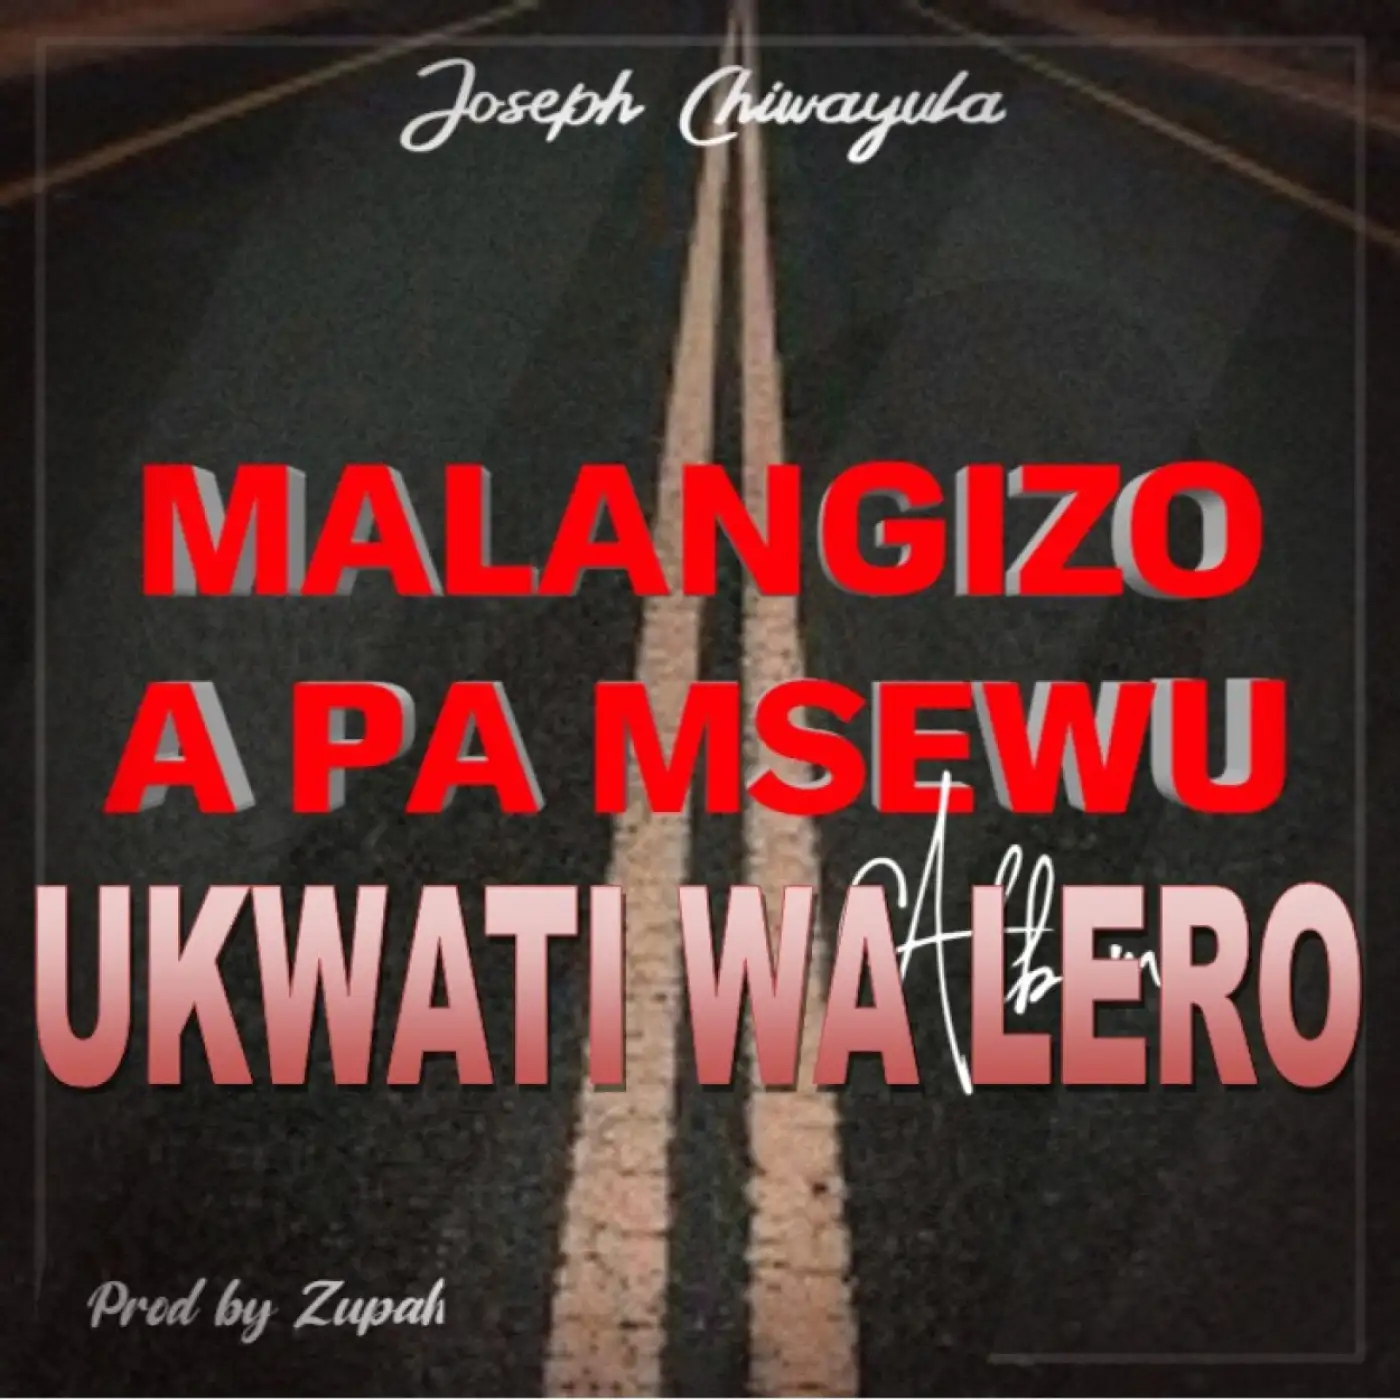 Joseph Chiwayula - Ukwati Wa Lero